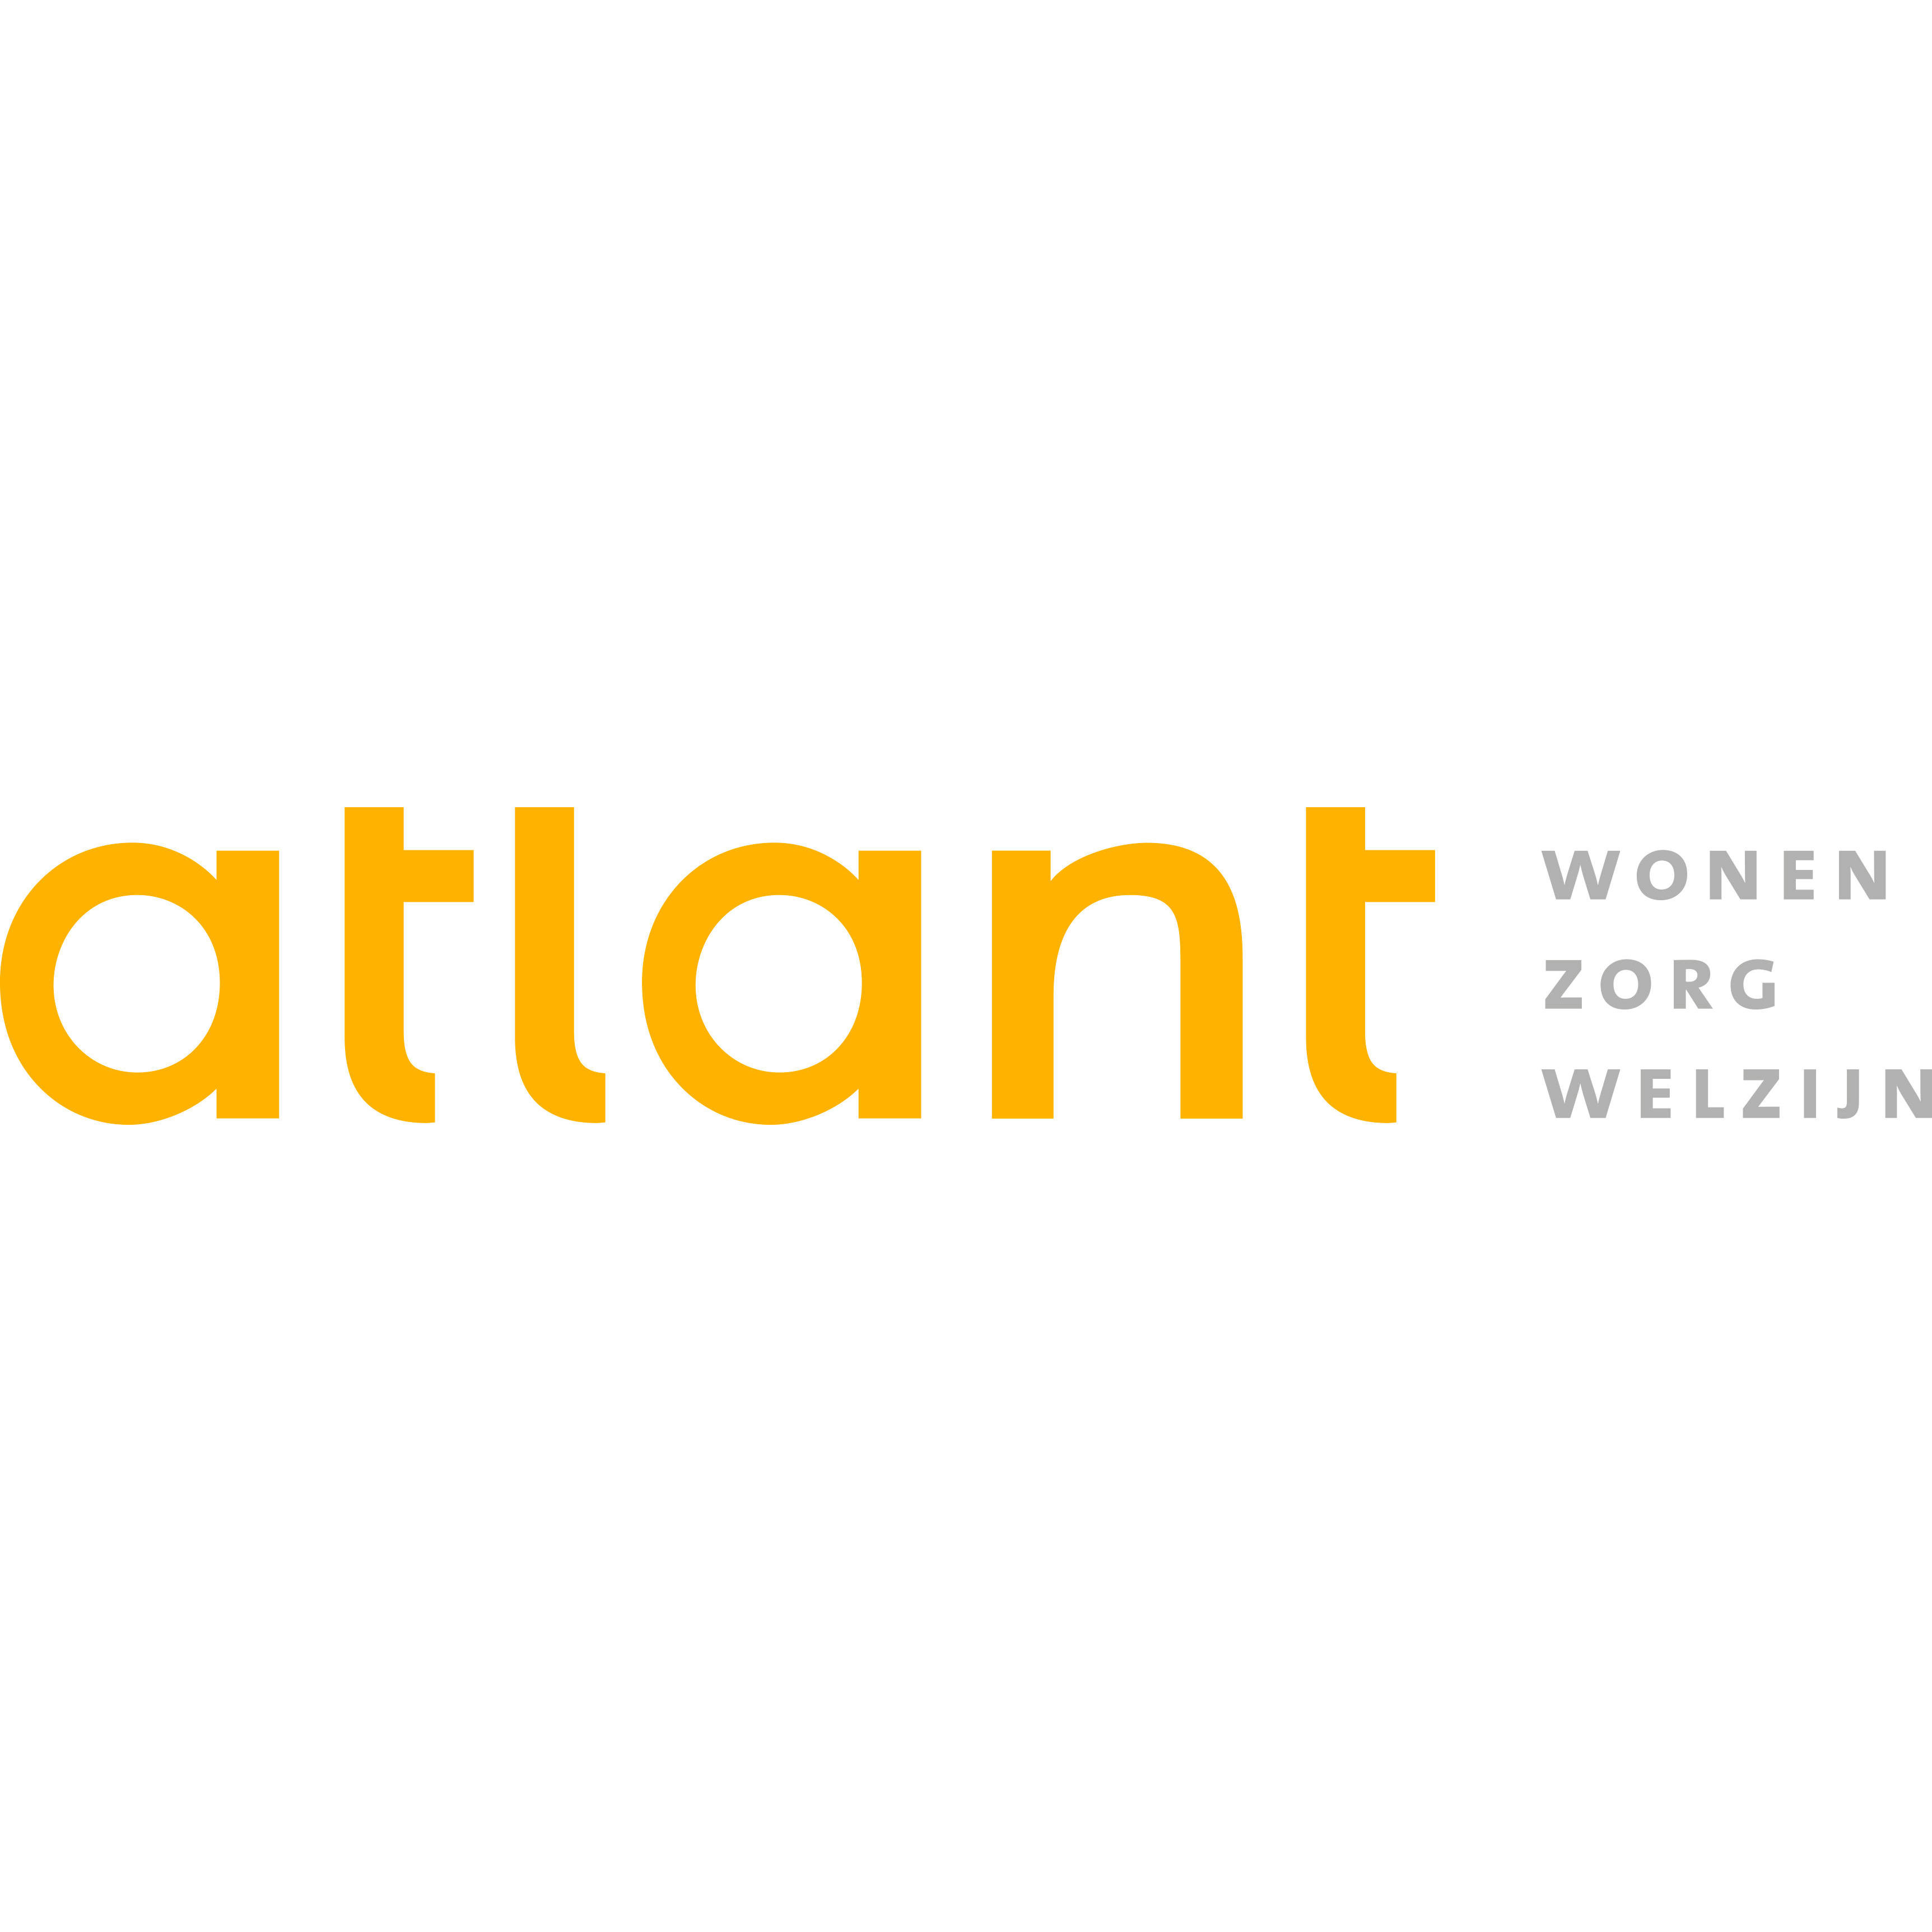 Atlant wonen zorg welzijn Logo